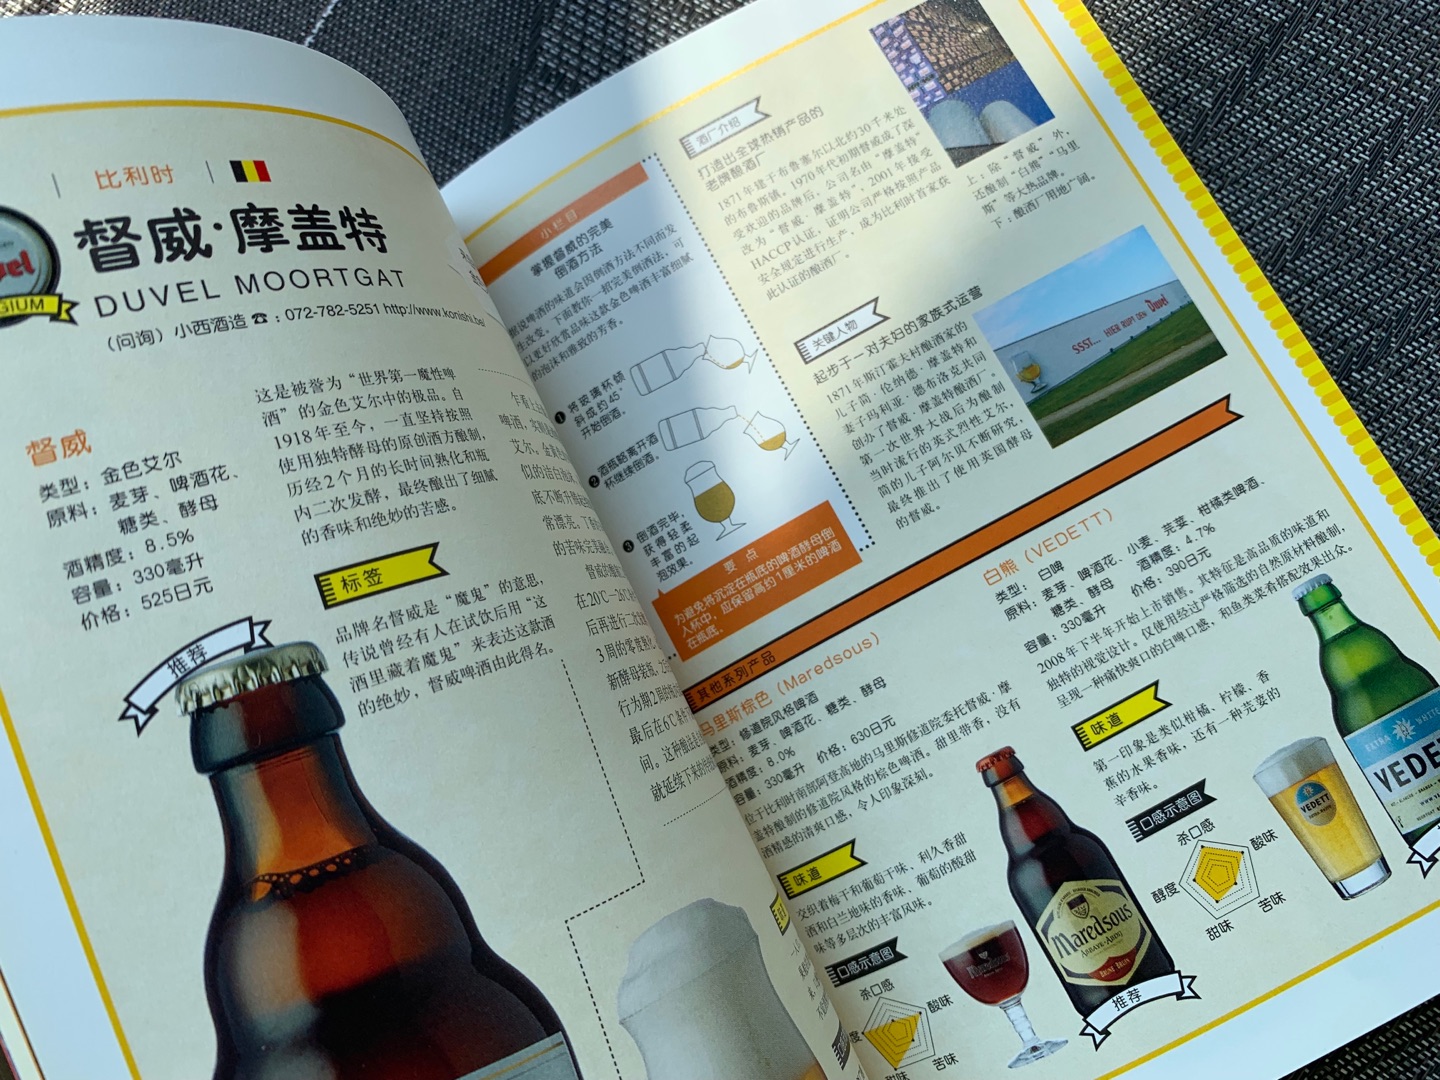 到底是日本人编的，介绍了那么多日本啤酒，脸还真大?